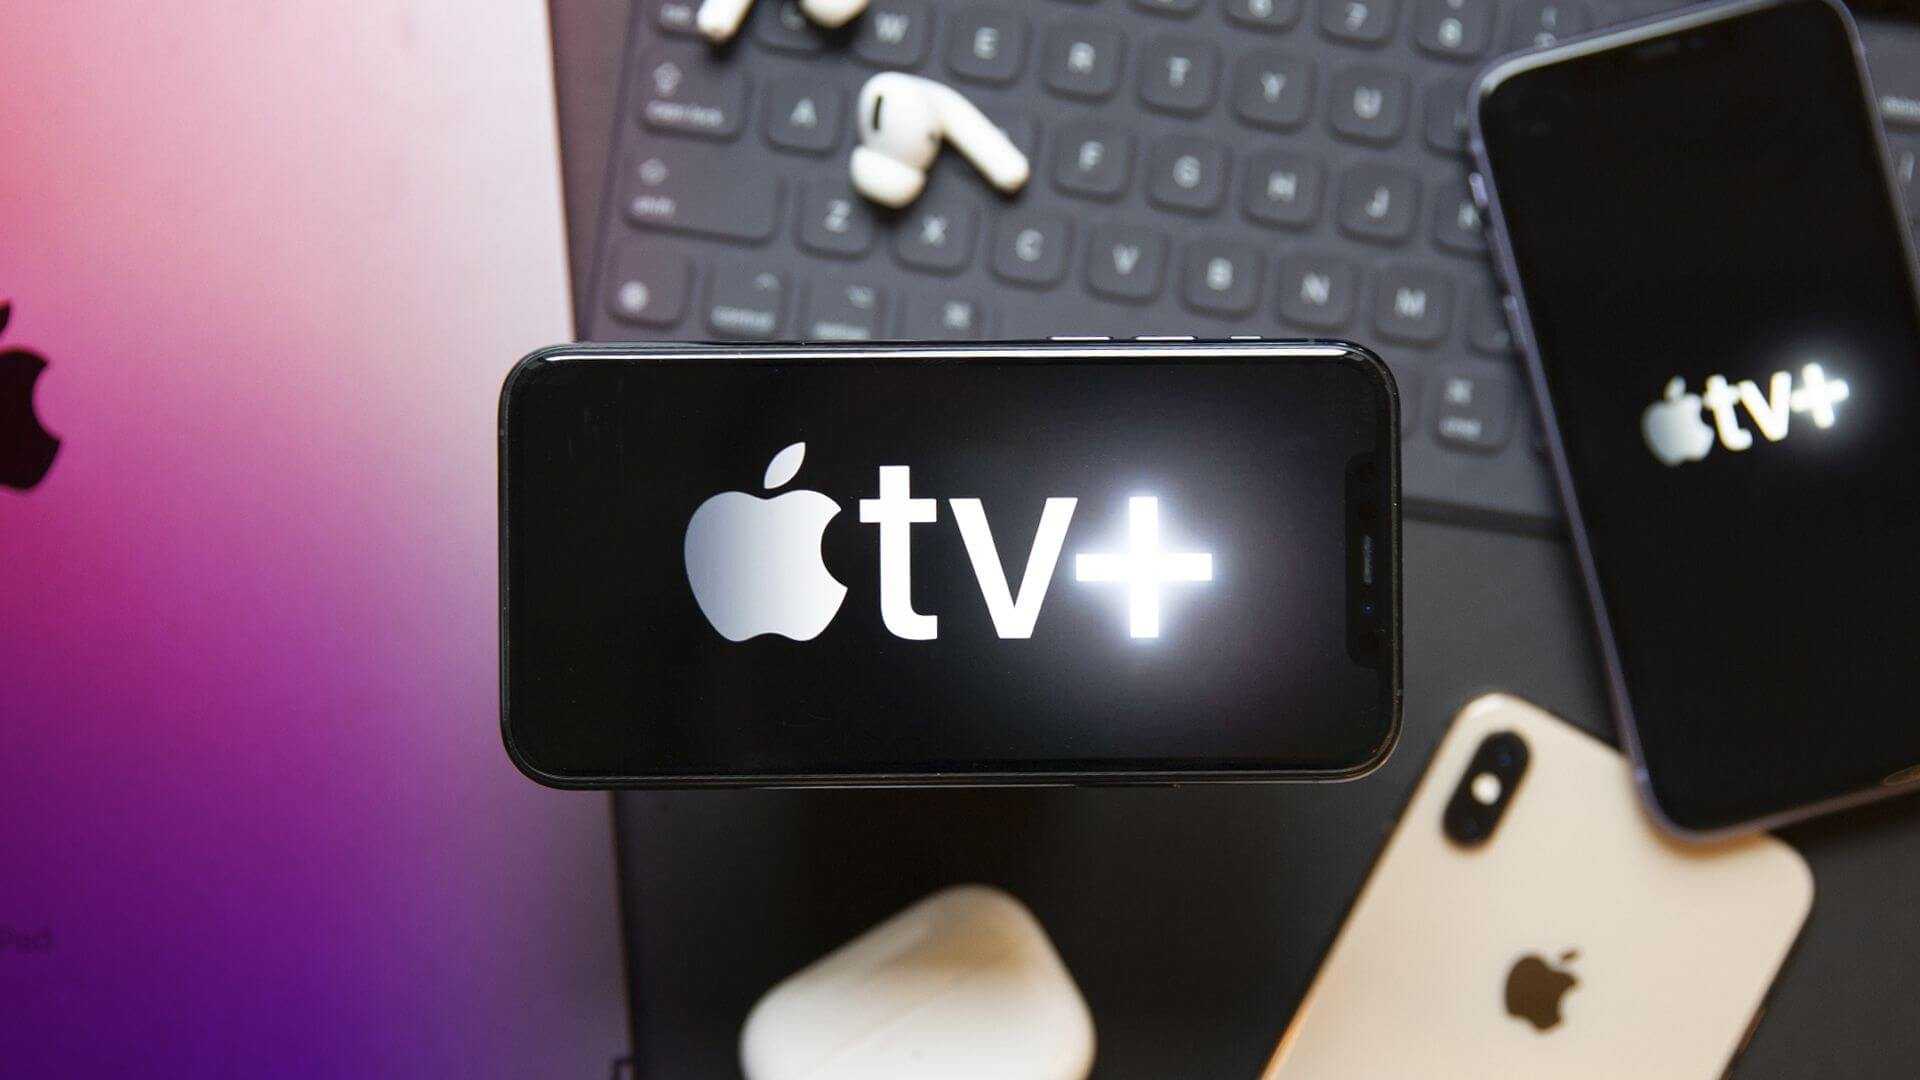 Iptv на apple tv: возможности и как подключить, все способы запуска